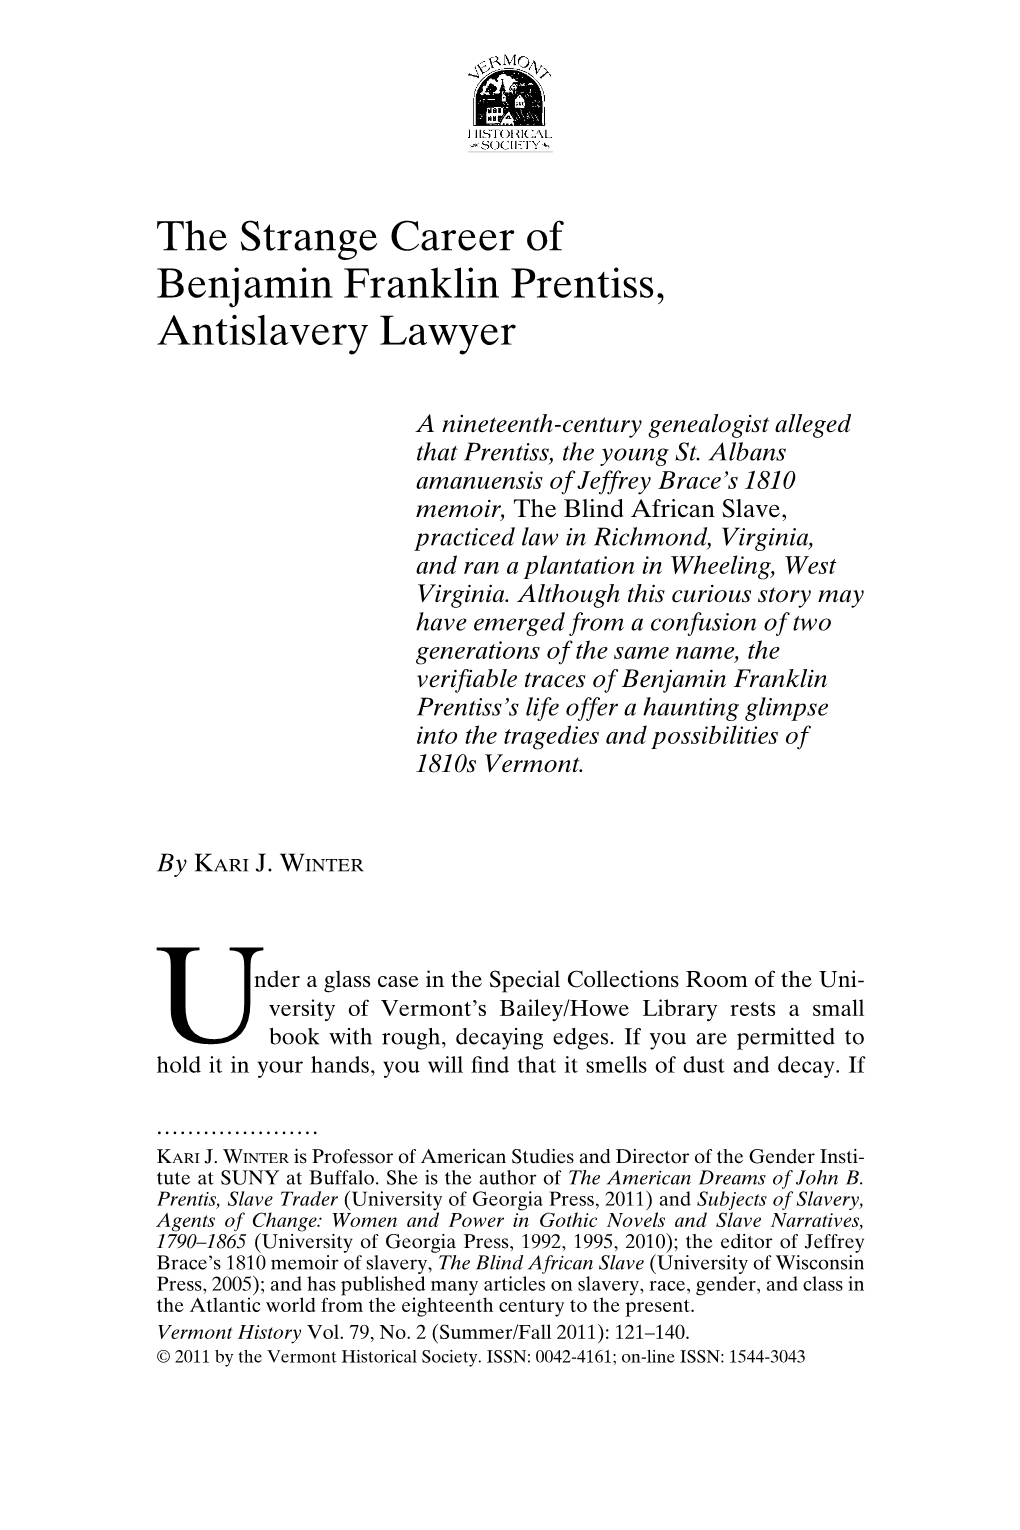 The Strange Career of Benjamin Franklin Prentiss, Antislavery Lawyer